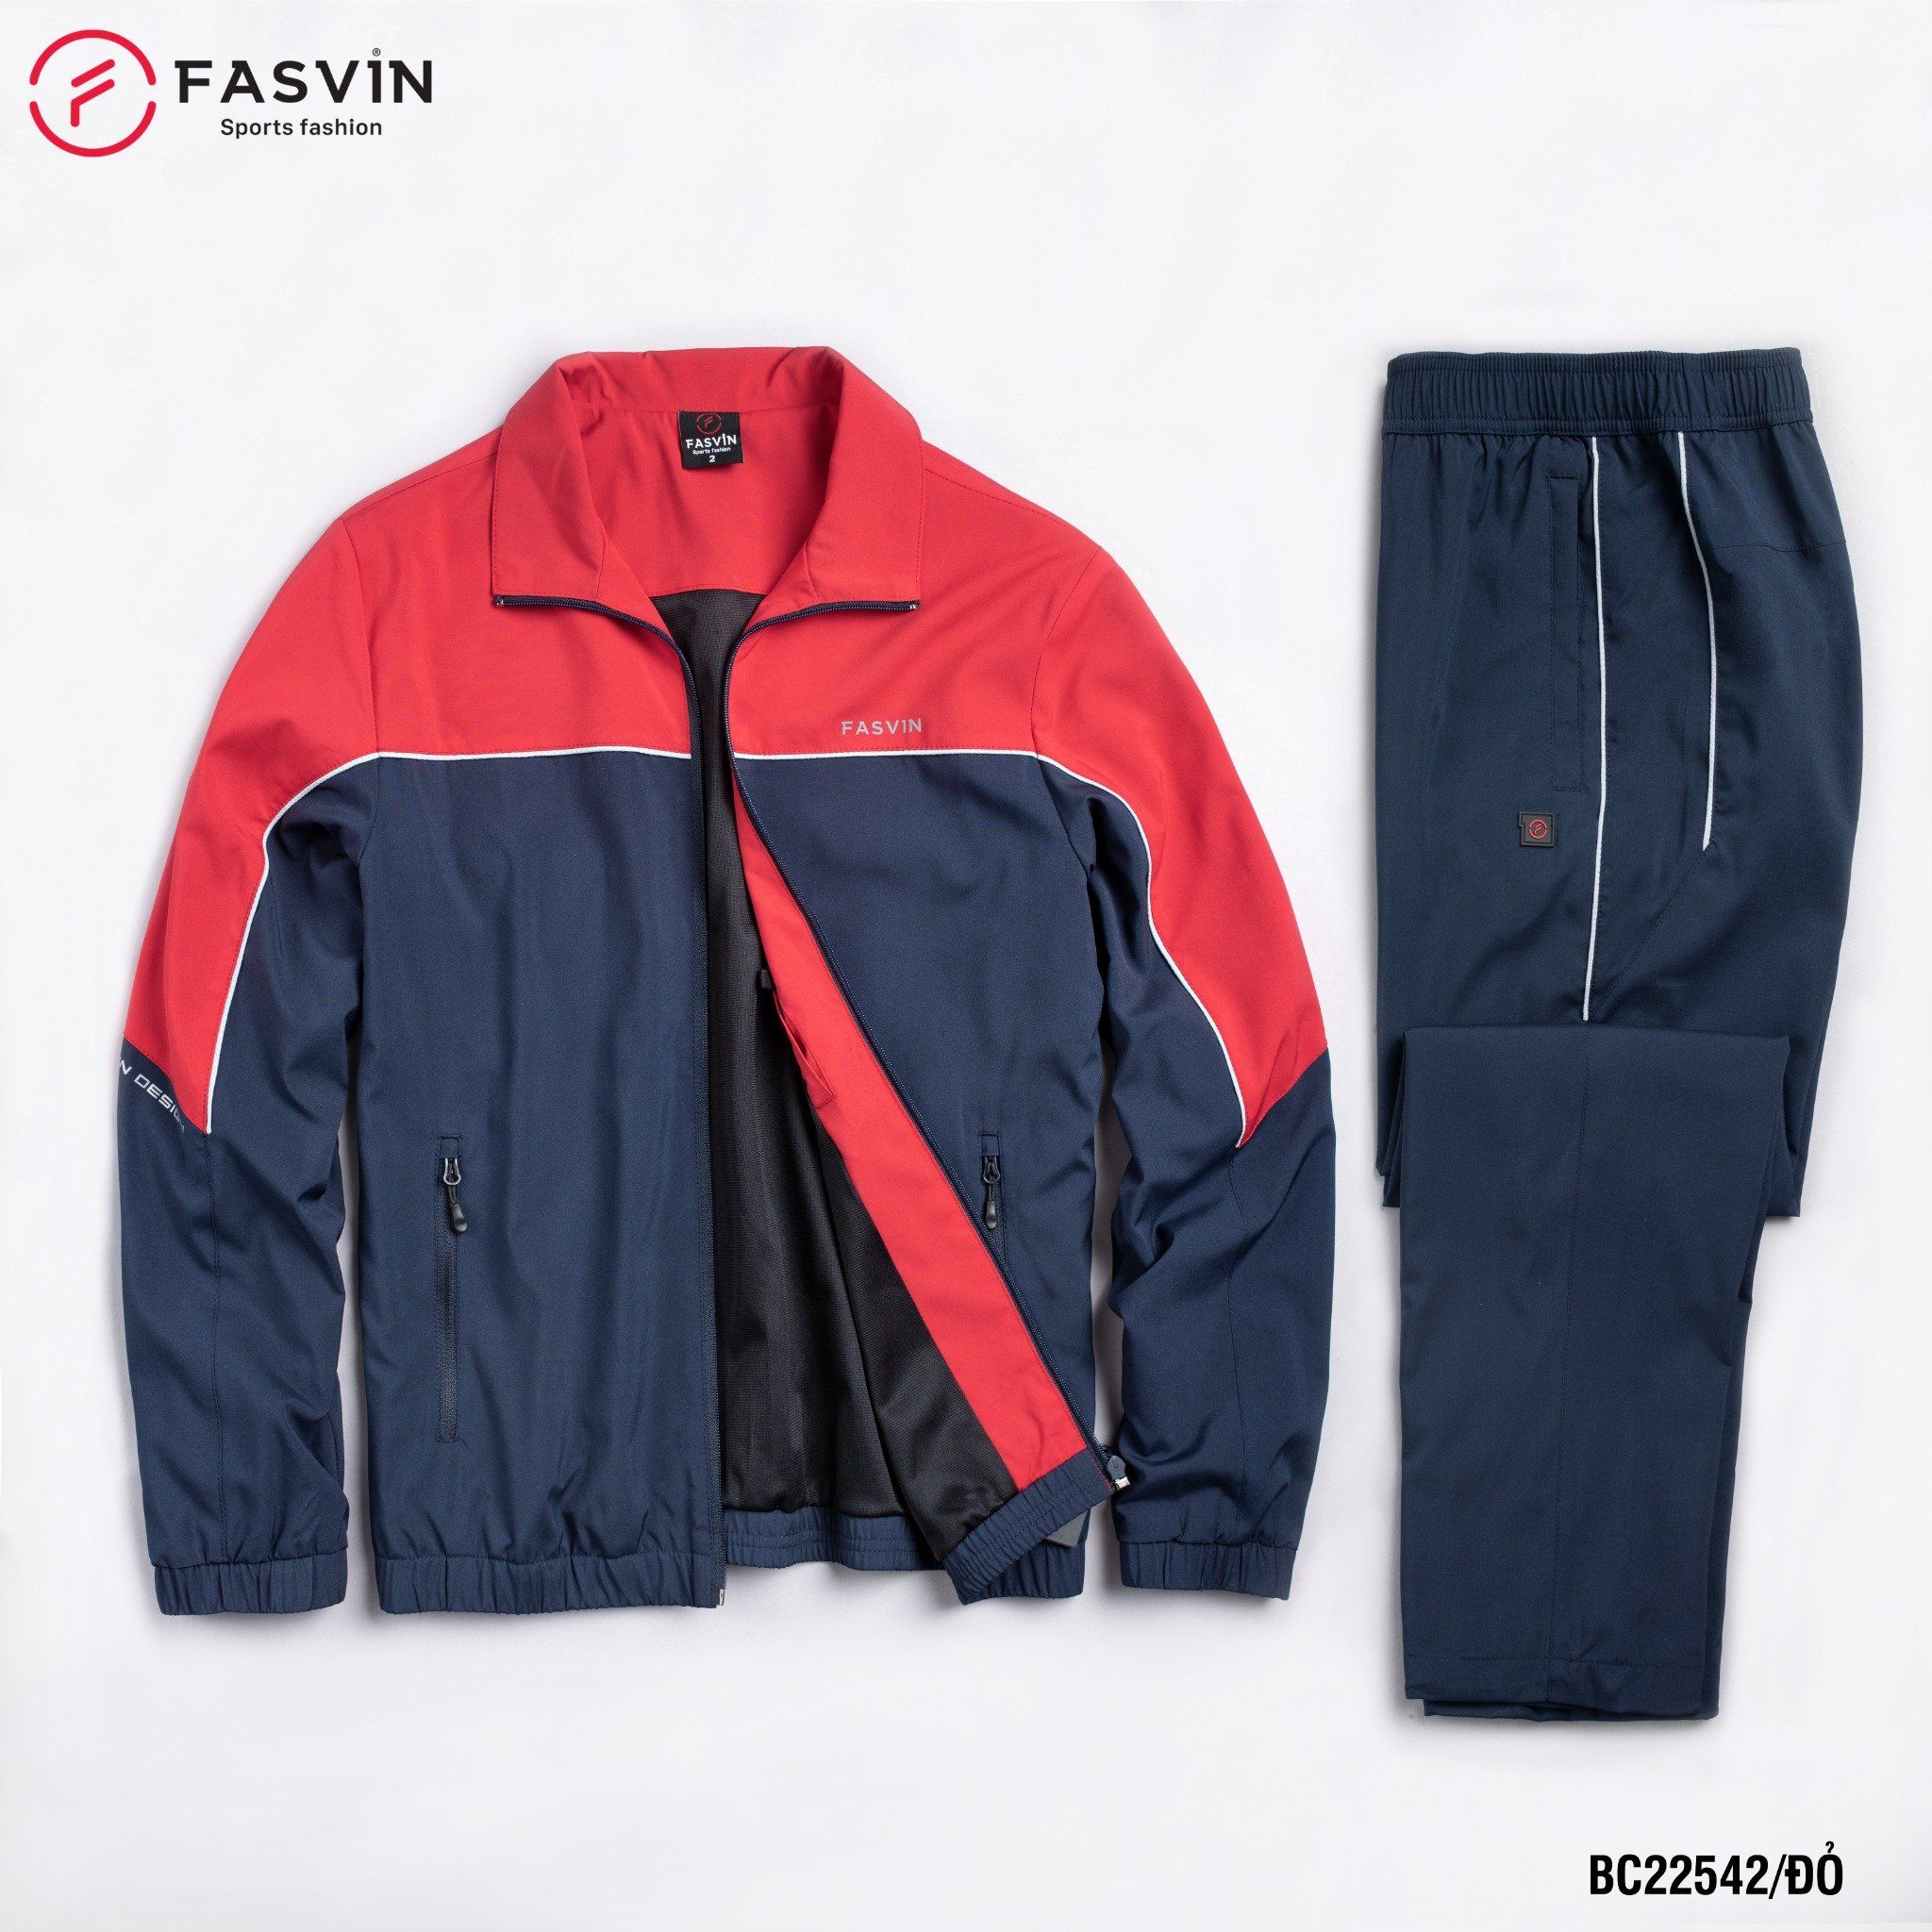  Bộ thể thao nam Fasvin chất vải gió chun 2 lớp co giãn mềm mại BC22542 